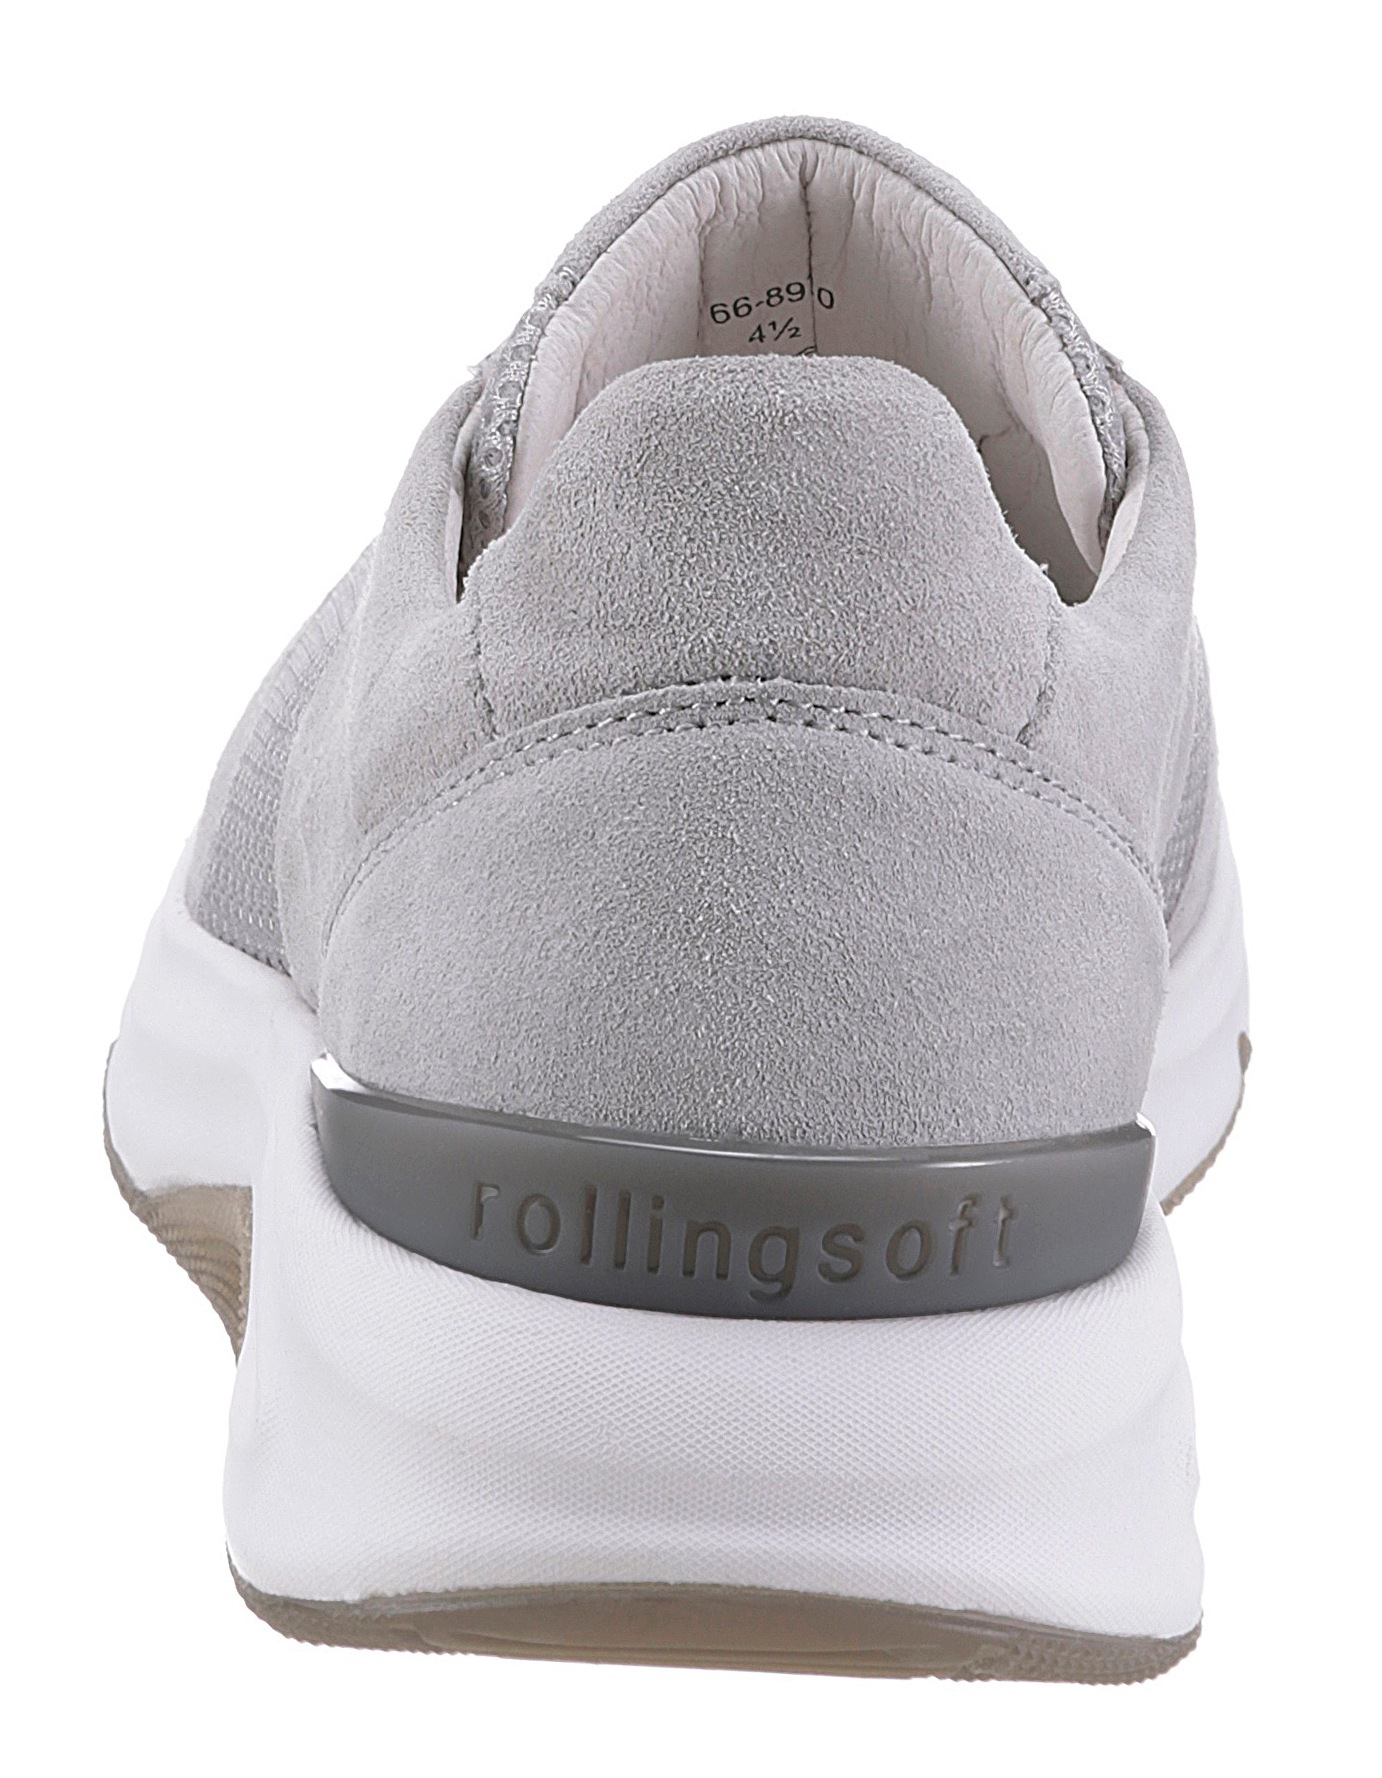 Gabor Rollingsoft Keilsneaker, in sportivem Design, Freizeitschuh, Halbschuh, Schnürschuh